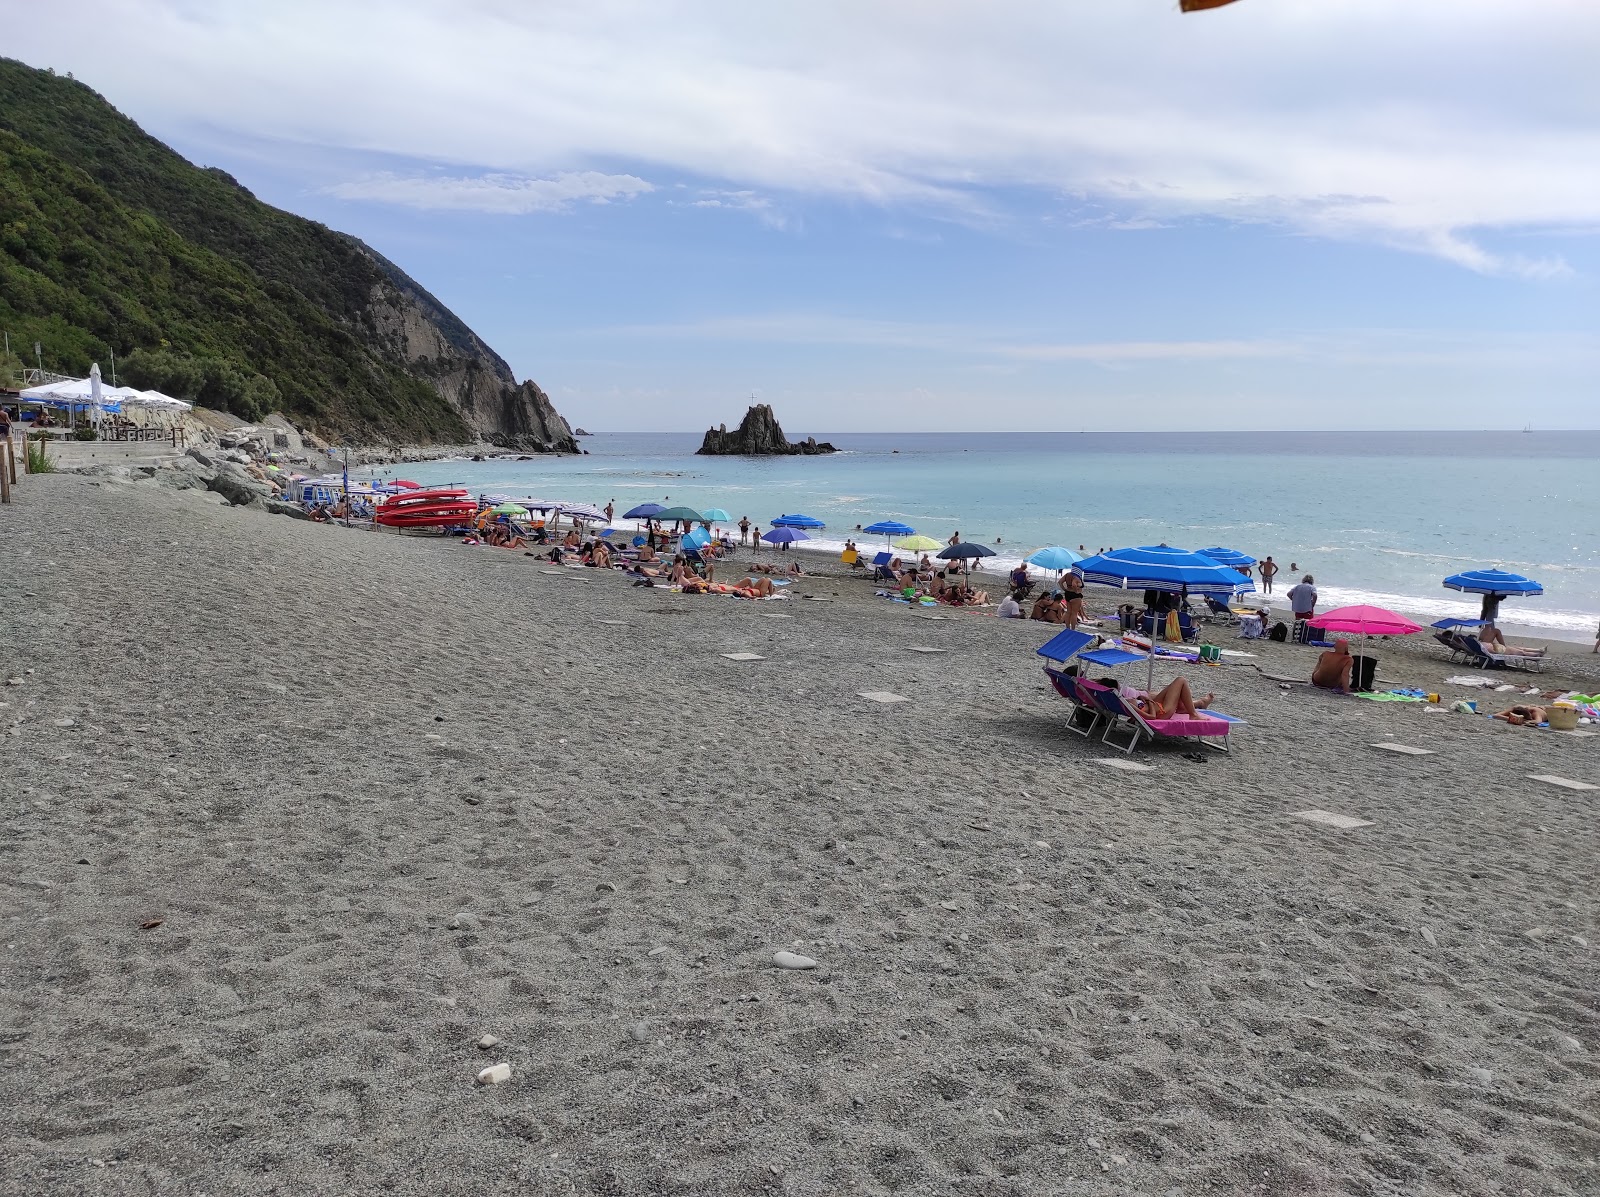 Photo of Spiaggia Riva Trigoso with straight shore